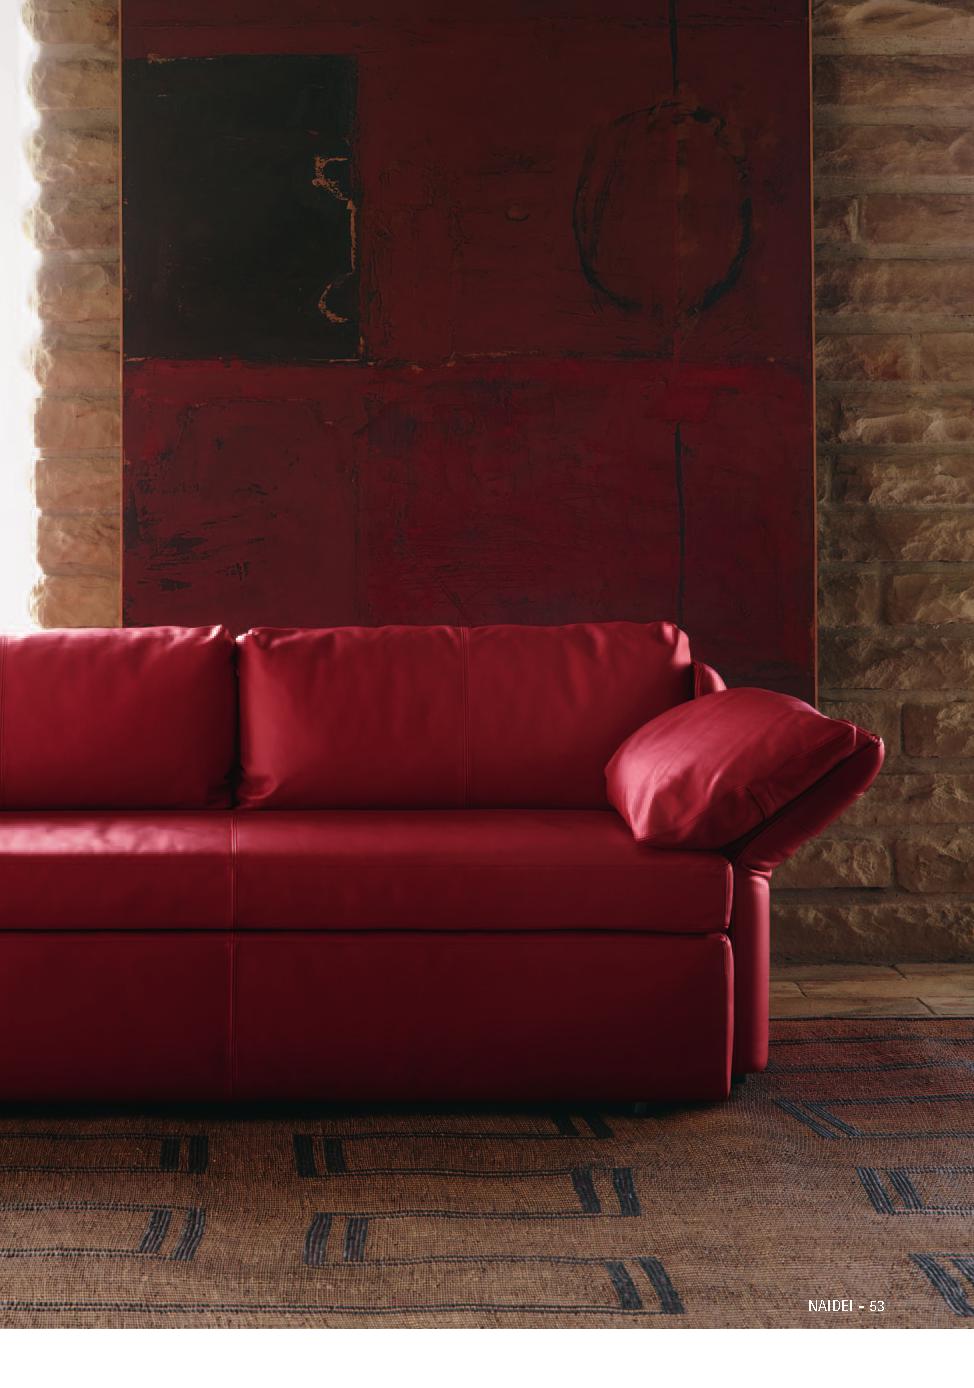 Poltrona Frau红色系沙发